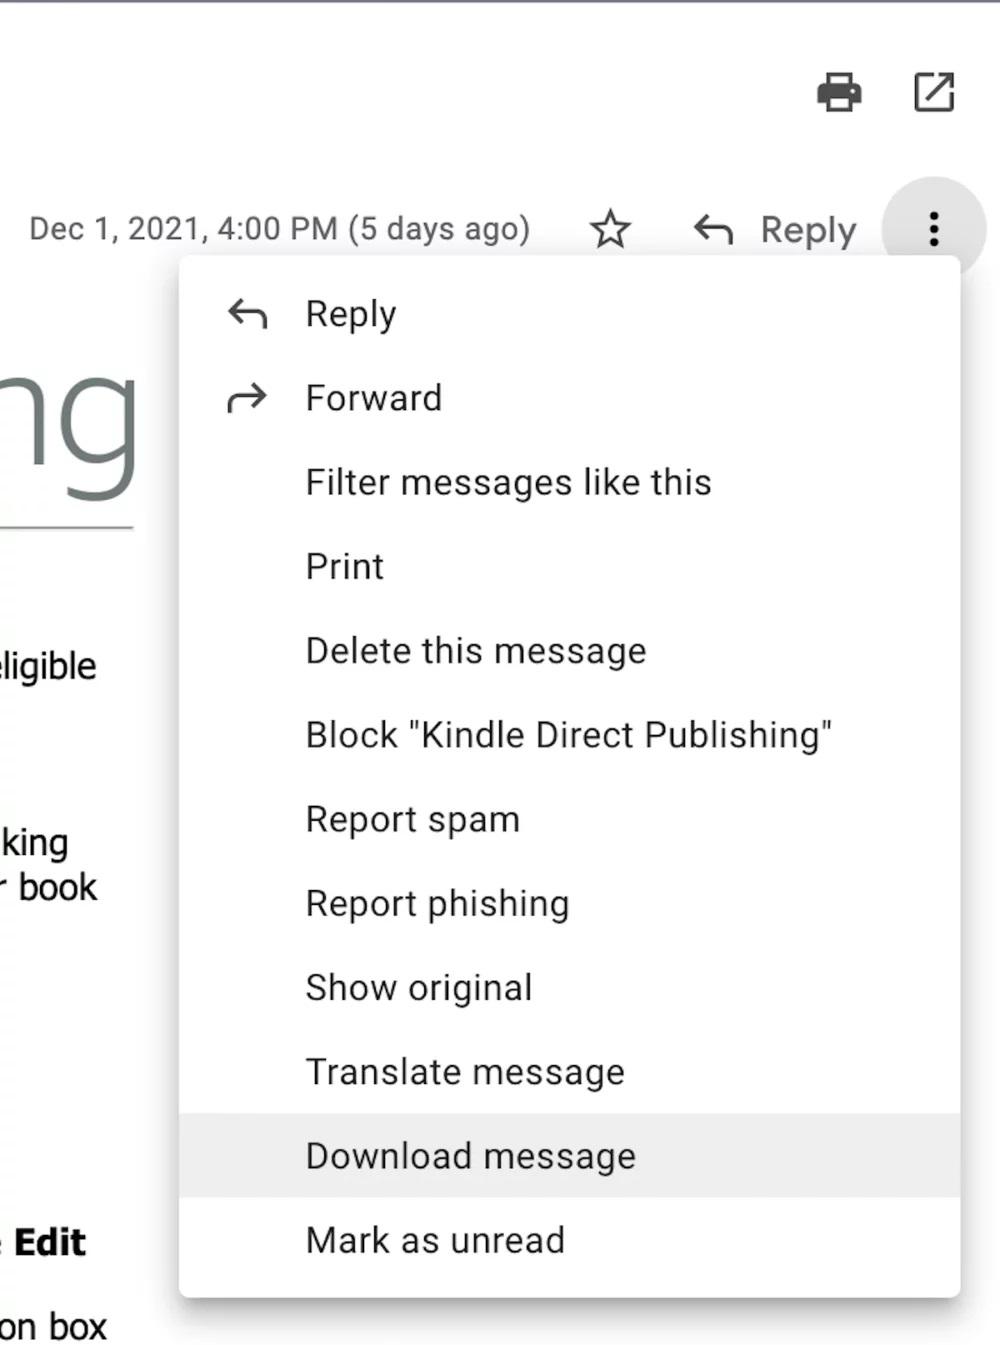 حفظ الرسائل من Gmail على الكمبيوتر